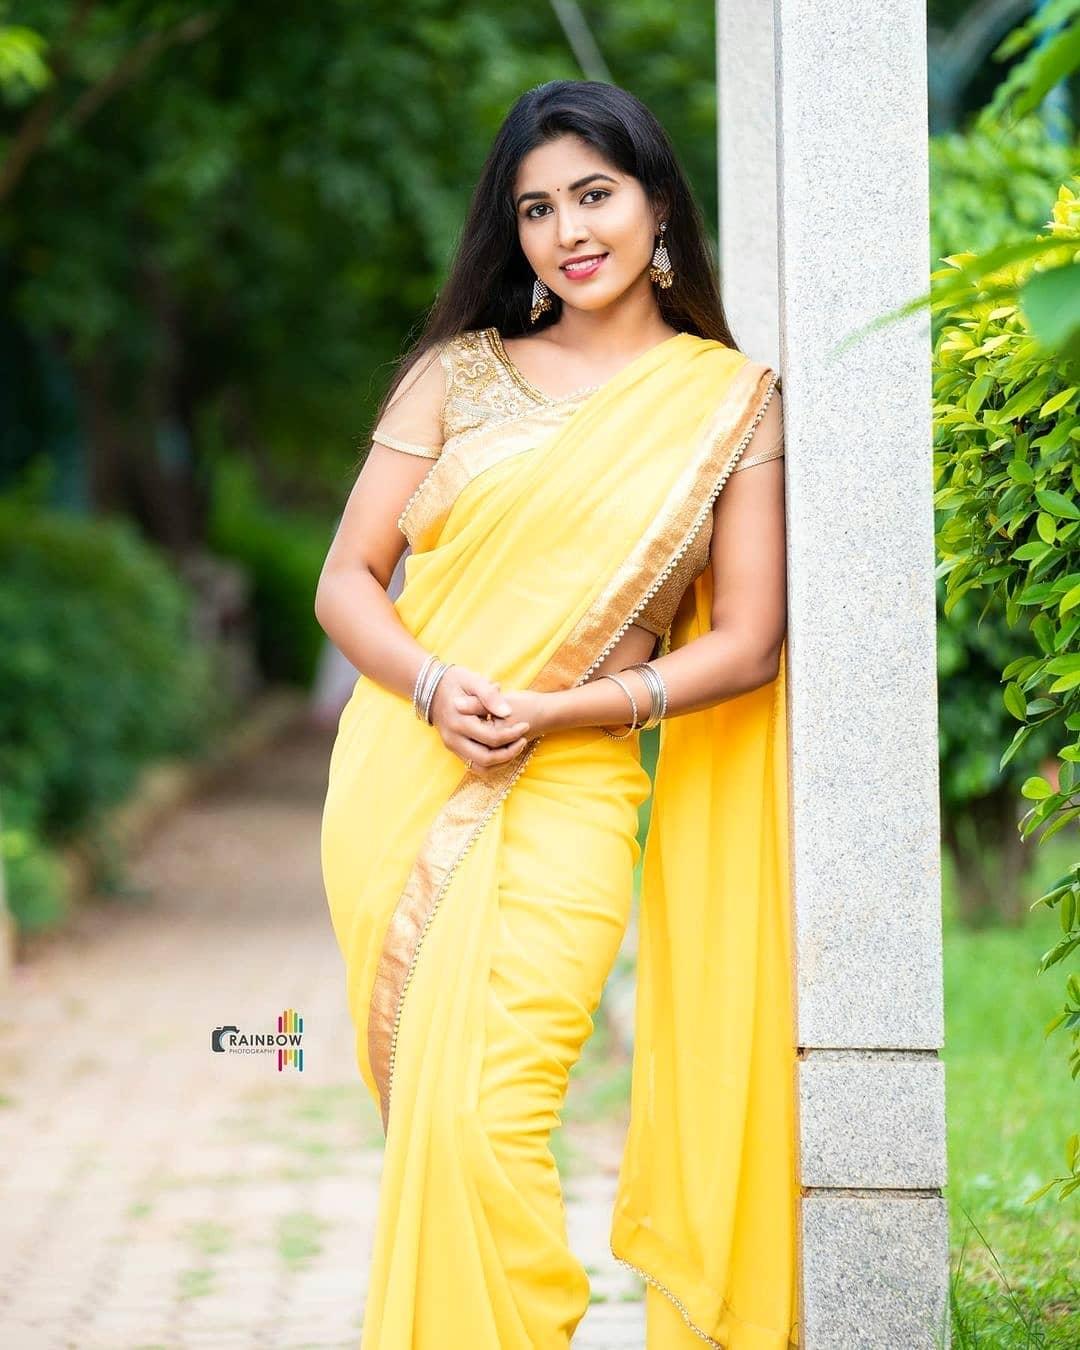 Apurva beautiful and hot photos gallery| Kannada actress Apurva in yellow  saree hot photos Photos: HD Images, Pictures, Stills, First Look Posters of  Apurva beautiful and hot photos gallery| Kannada actress Apurva